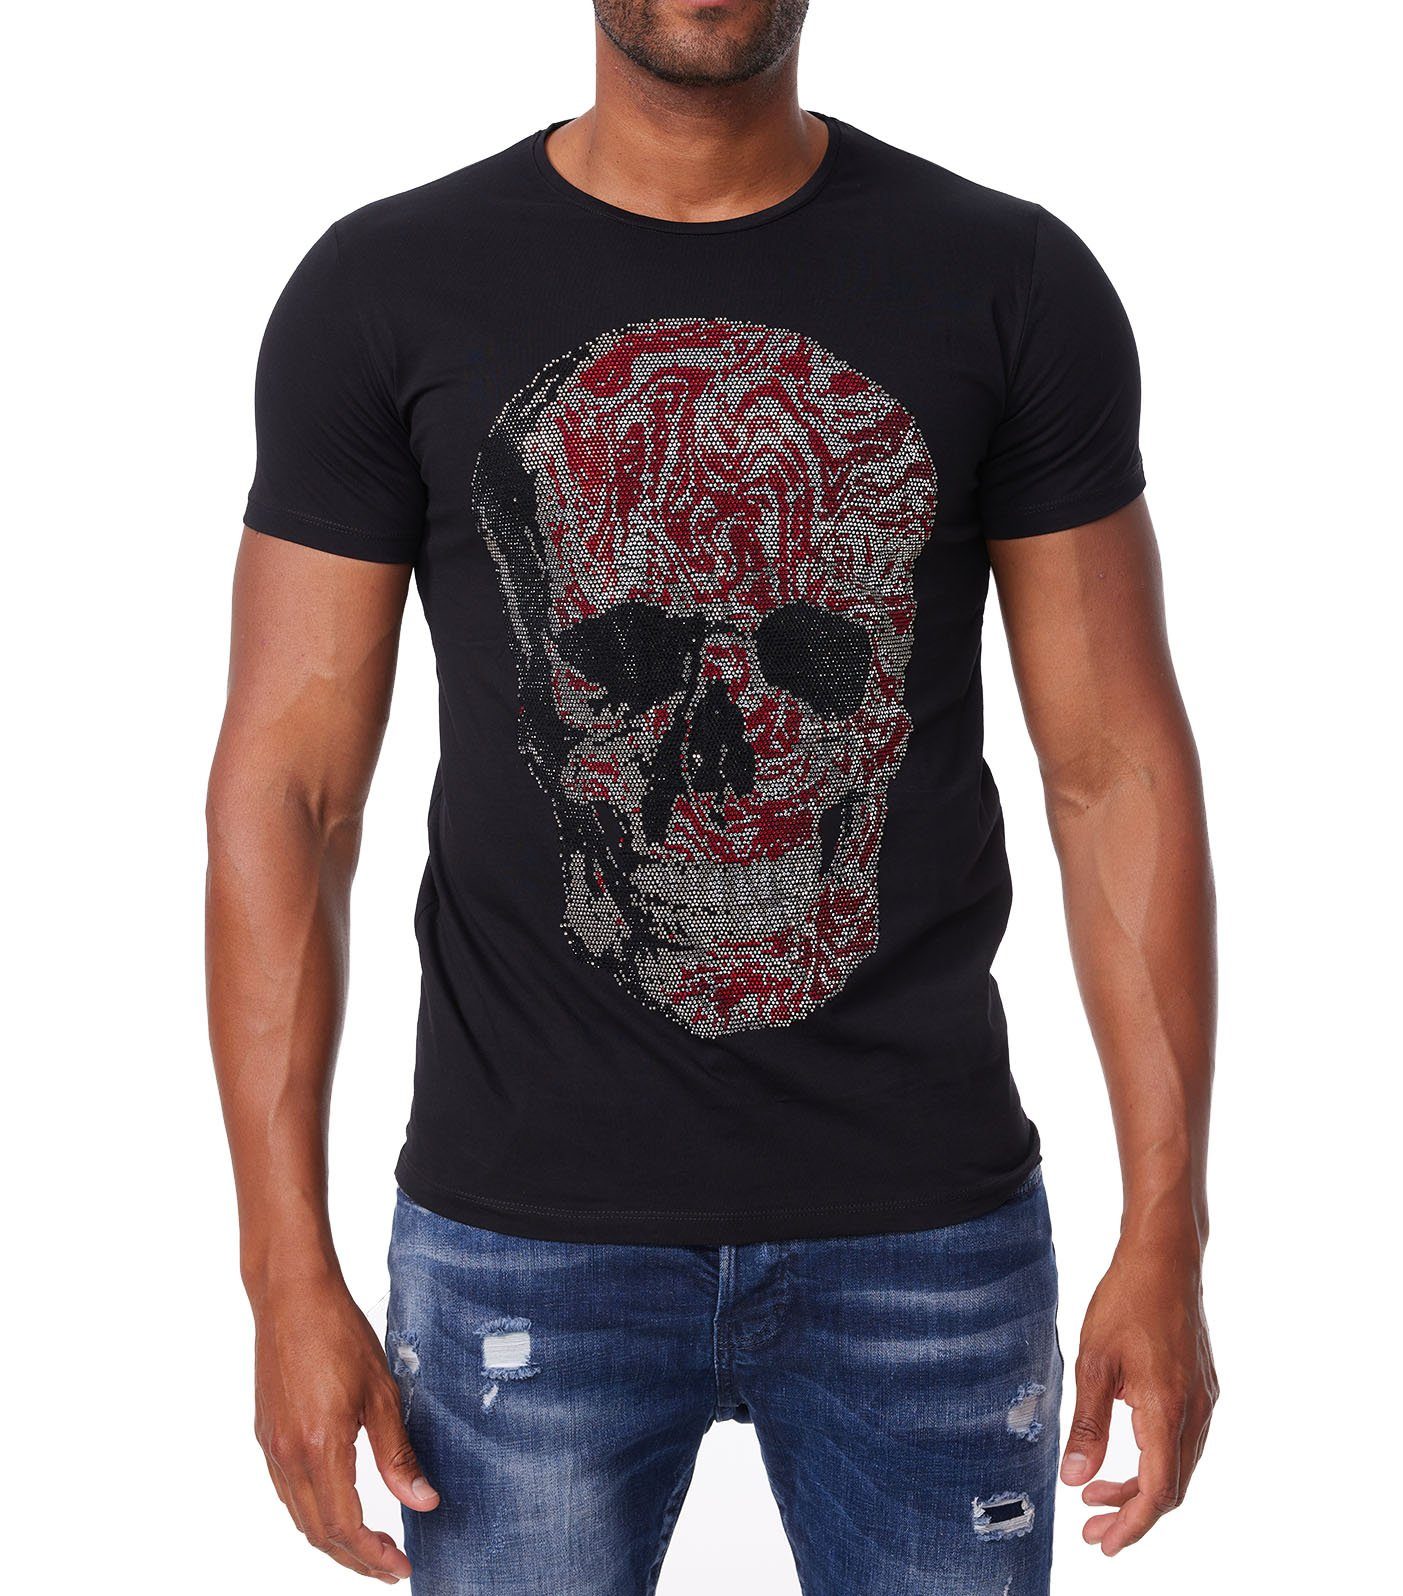 TRUENO Sommer T-Shirt Strass DH-T16 Herren mit Shirt Slim-Fit Totenkopf T-Shirt